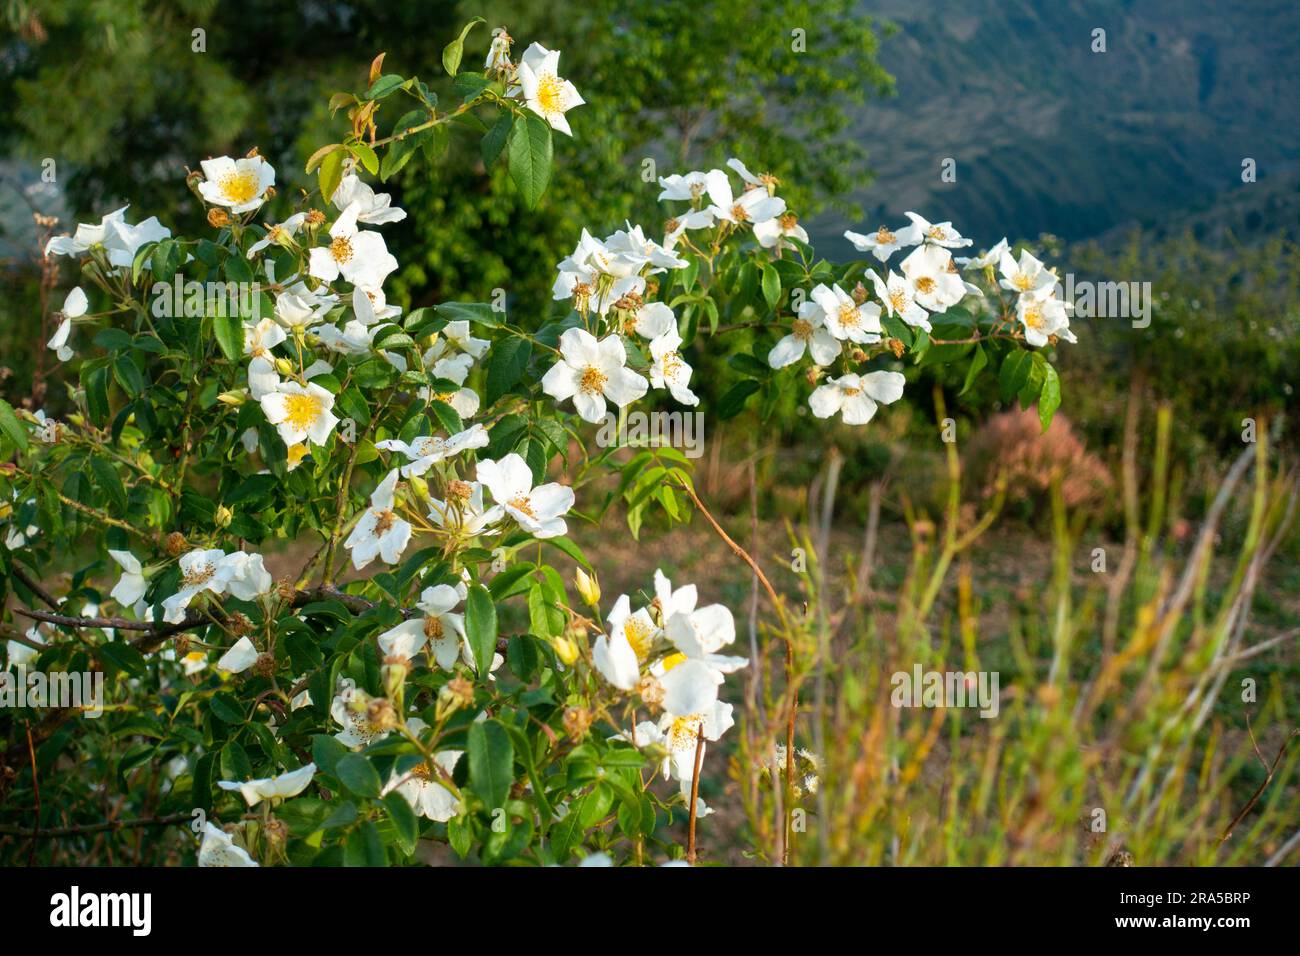 White flowers of Rosa filipes plant. Himalayan Region of Uttarakhand, India Stock Photo